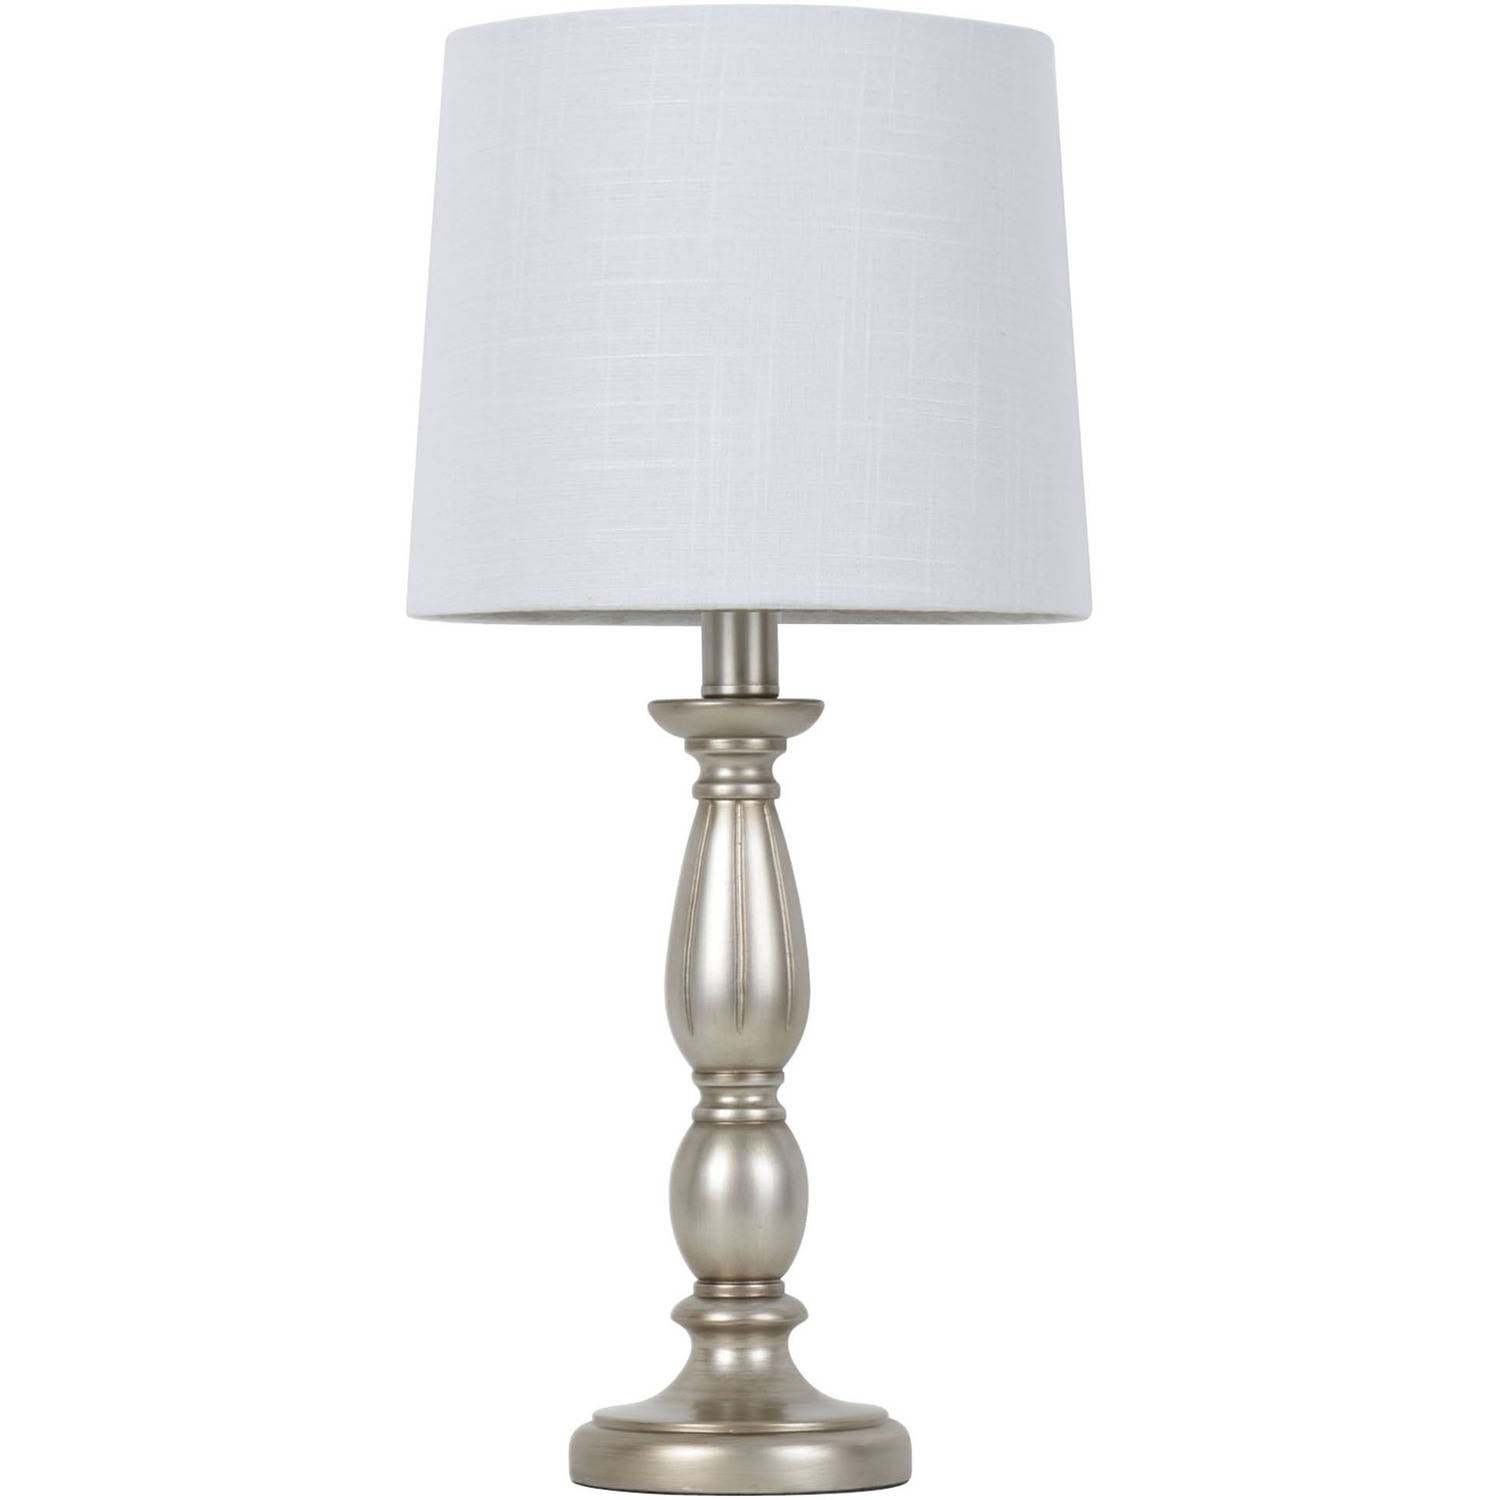 Bedroom Nightstand Lamps - Walmart.com